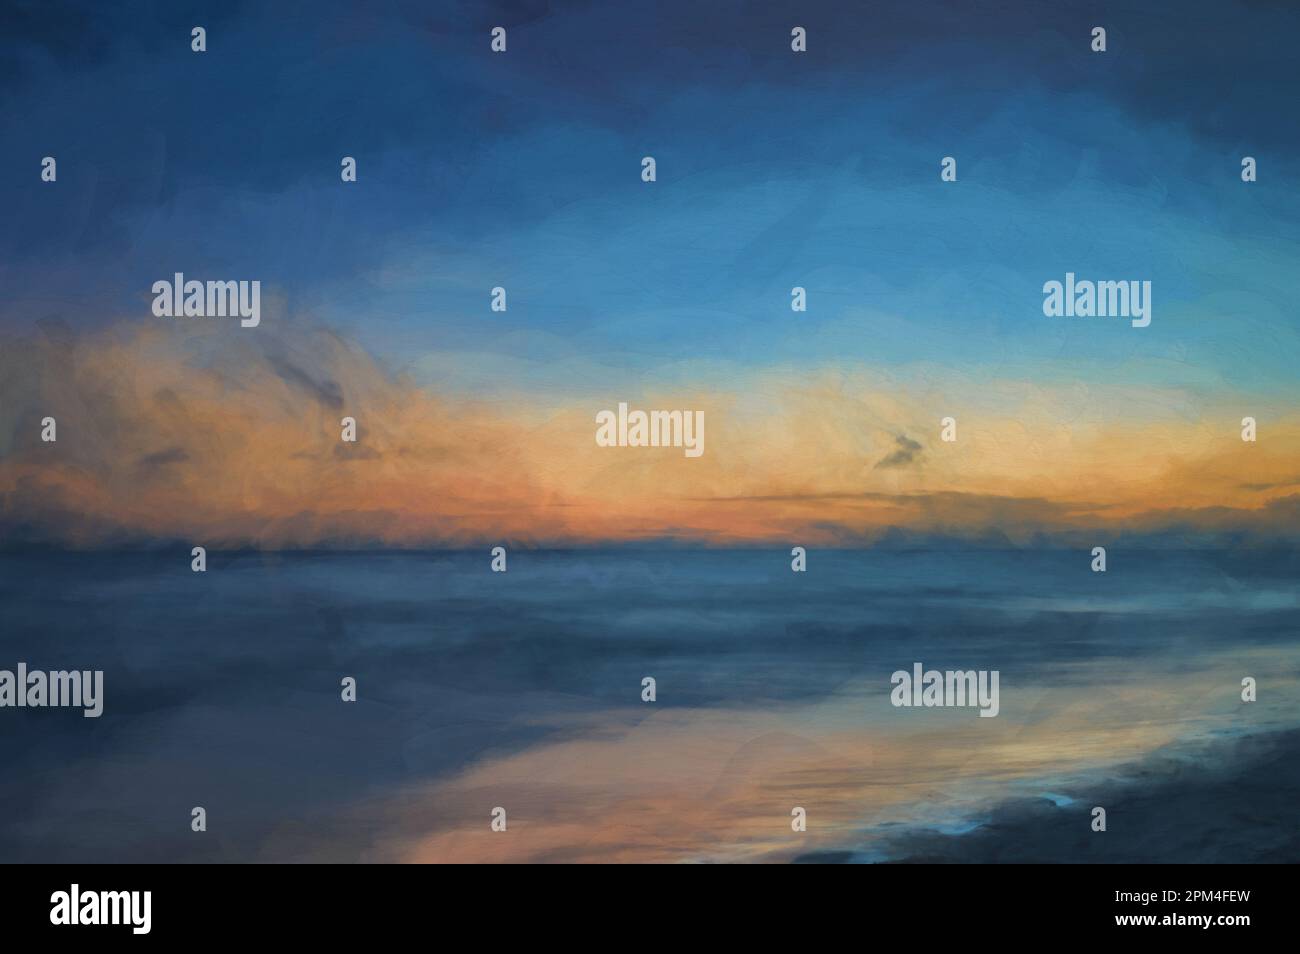 Peinture numérique d'une longue exposition de la mer à l'heure d'or, comme l'aube commence à se briser sur une plage de sable blanc. Banque D'Images